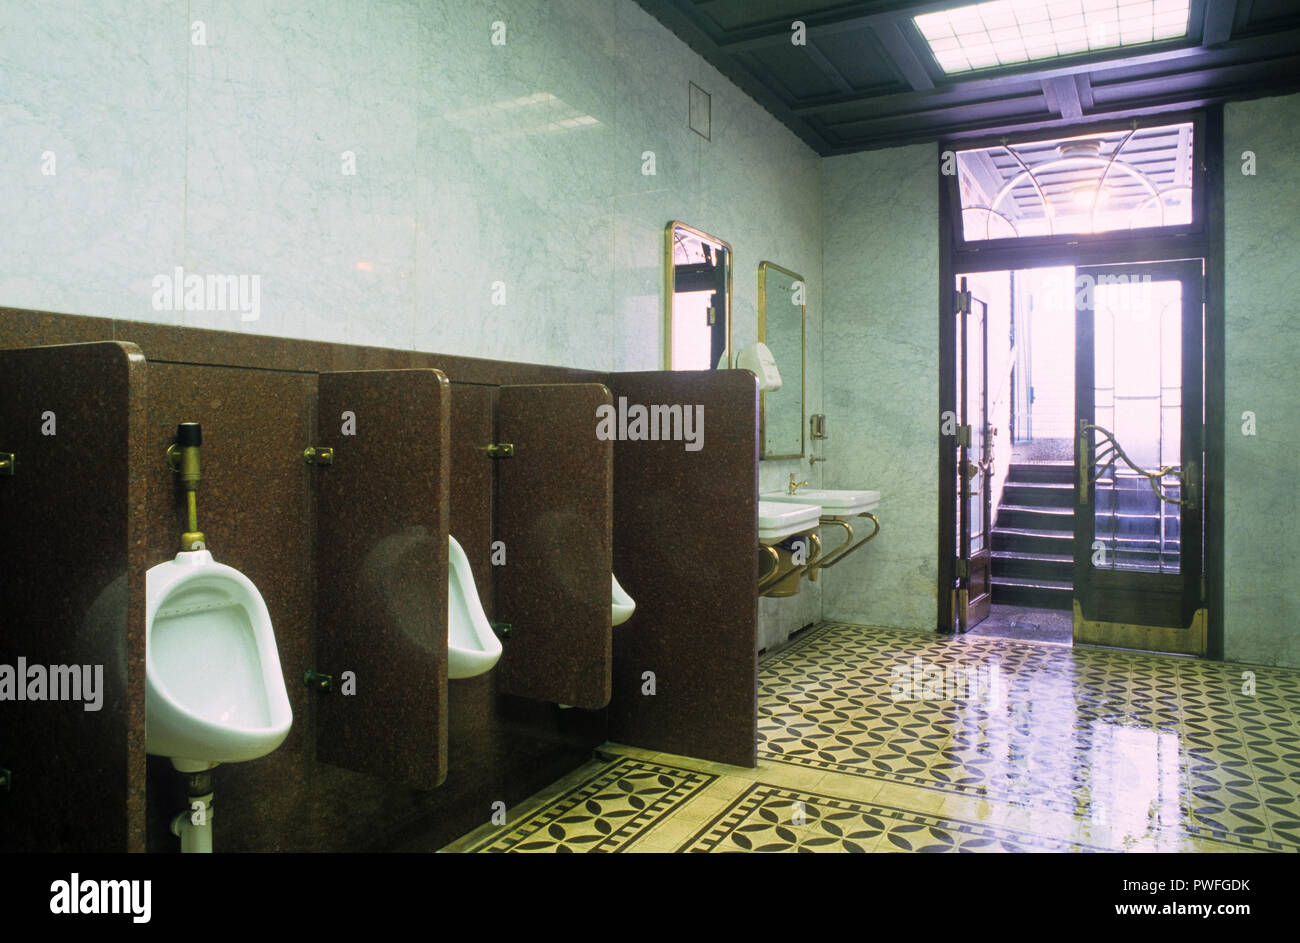 Wien, öffentliches WC-Wien, Öffentliche Toilette Stockfotografie - Alamy